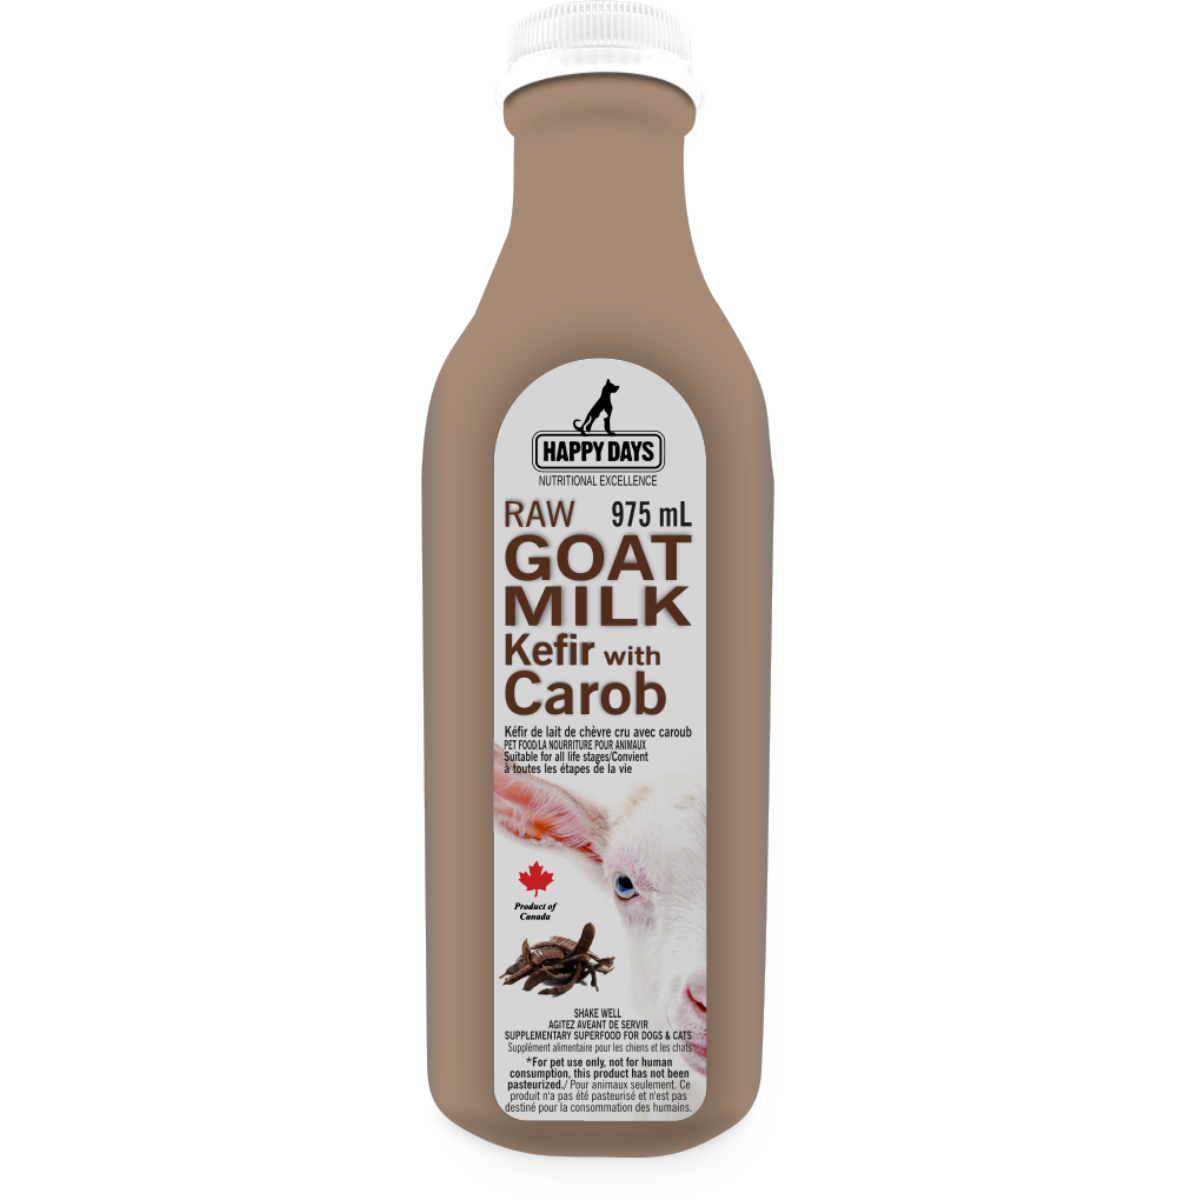 Happy Days Dairies - Raw Goat Milk Kefir Carob